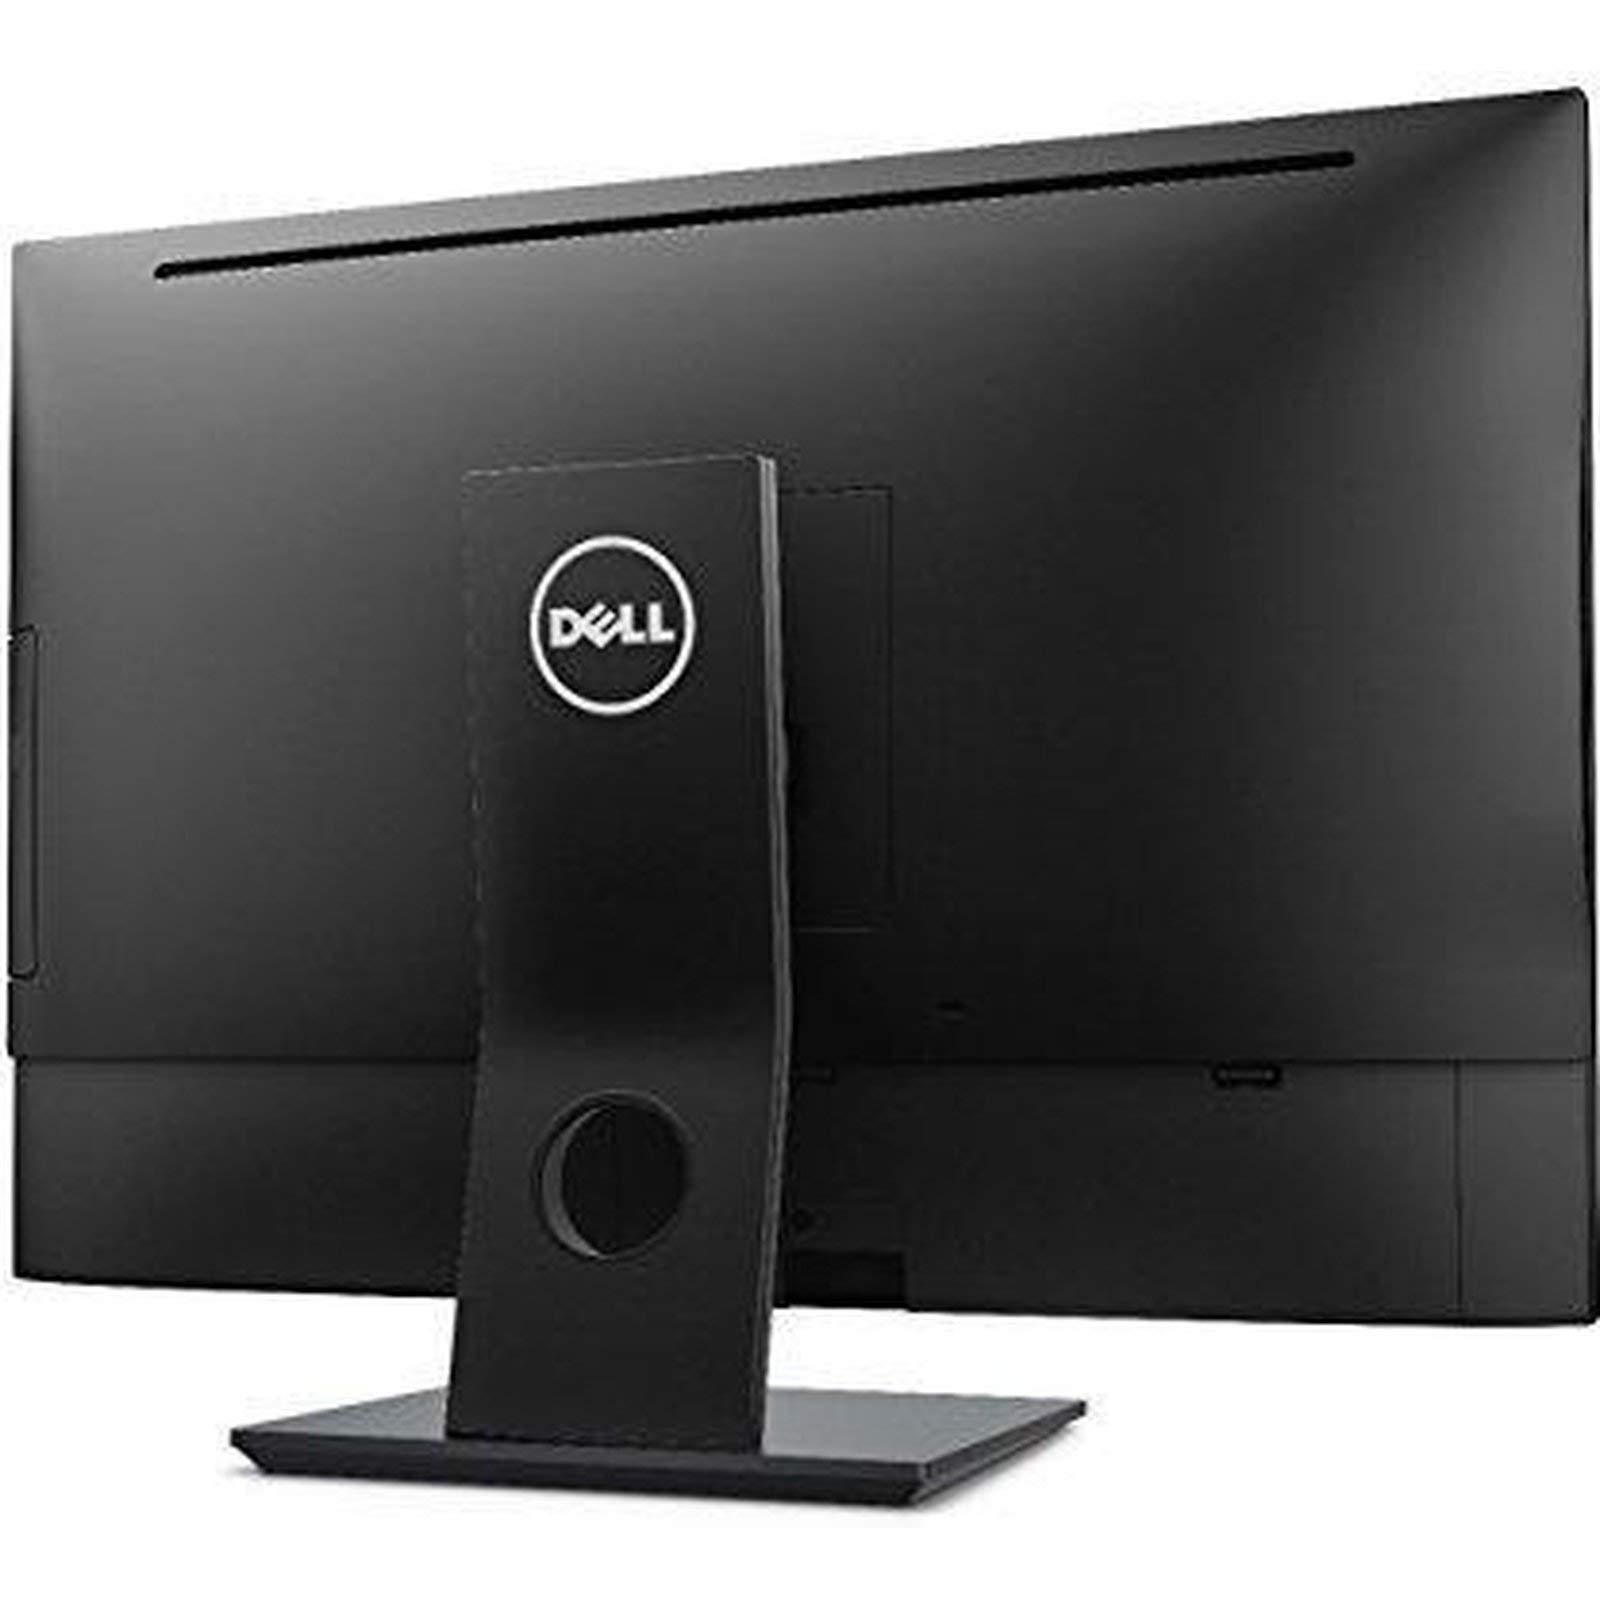 Dell OptiPlex 7450 23.8 Inch All-in-One Desktop Computer AIO PC, 1920x1080 FHD Display, Intel Quad Core i7-7700 3.60GHz, 8GB DDR4, 500GB HDD, Windows 10, DualBand WiFi, Bluetooth, Webcam (Renewed)